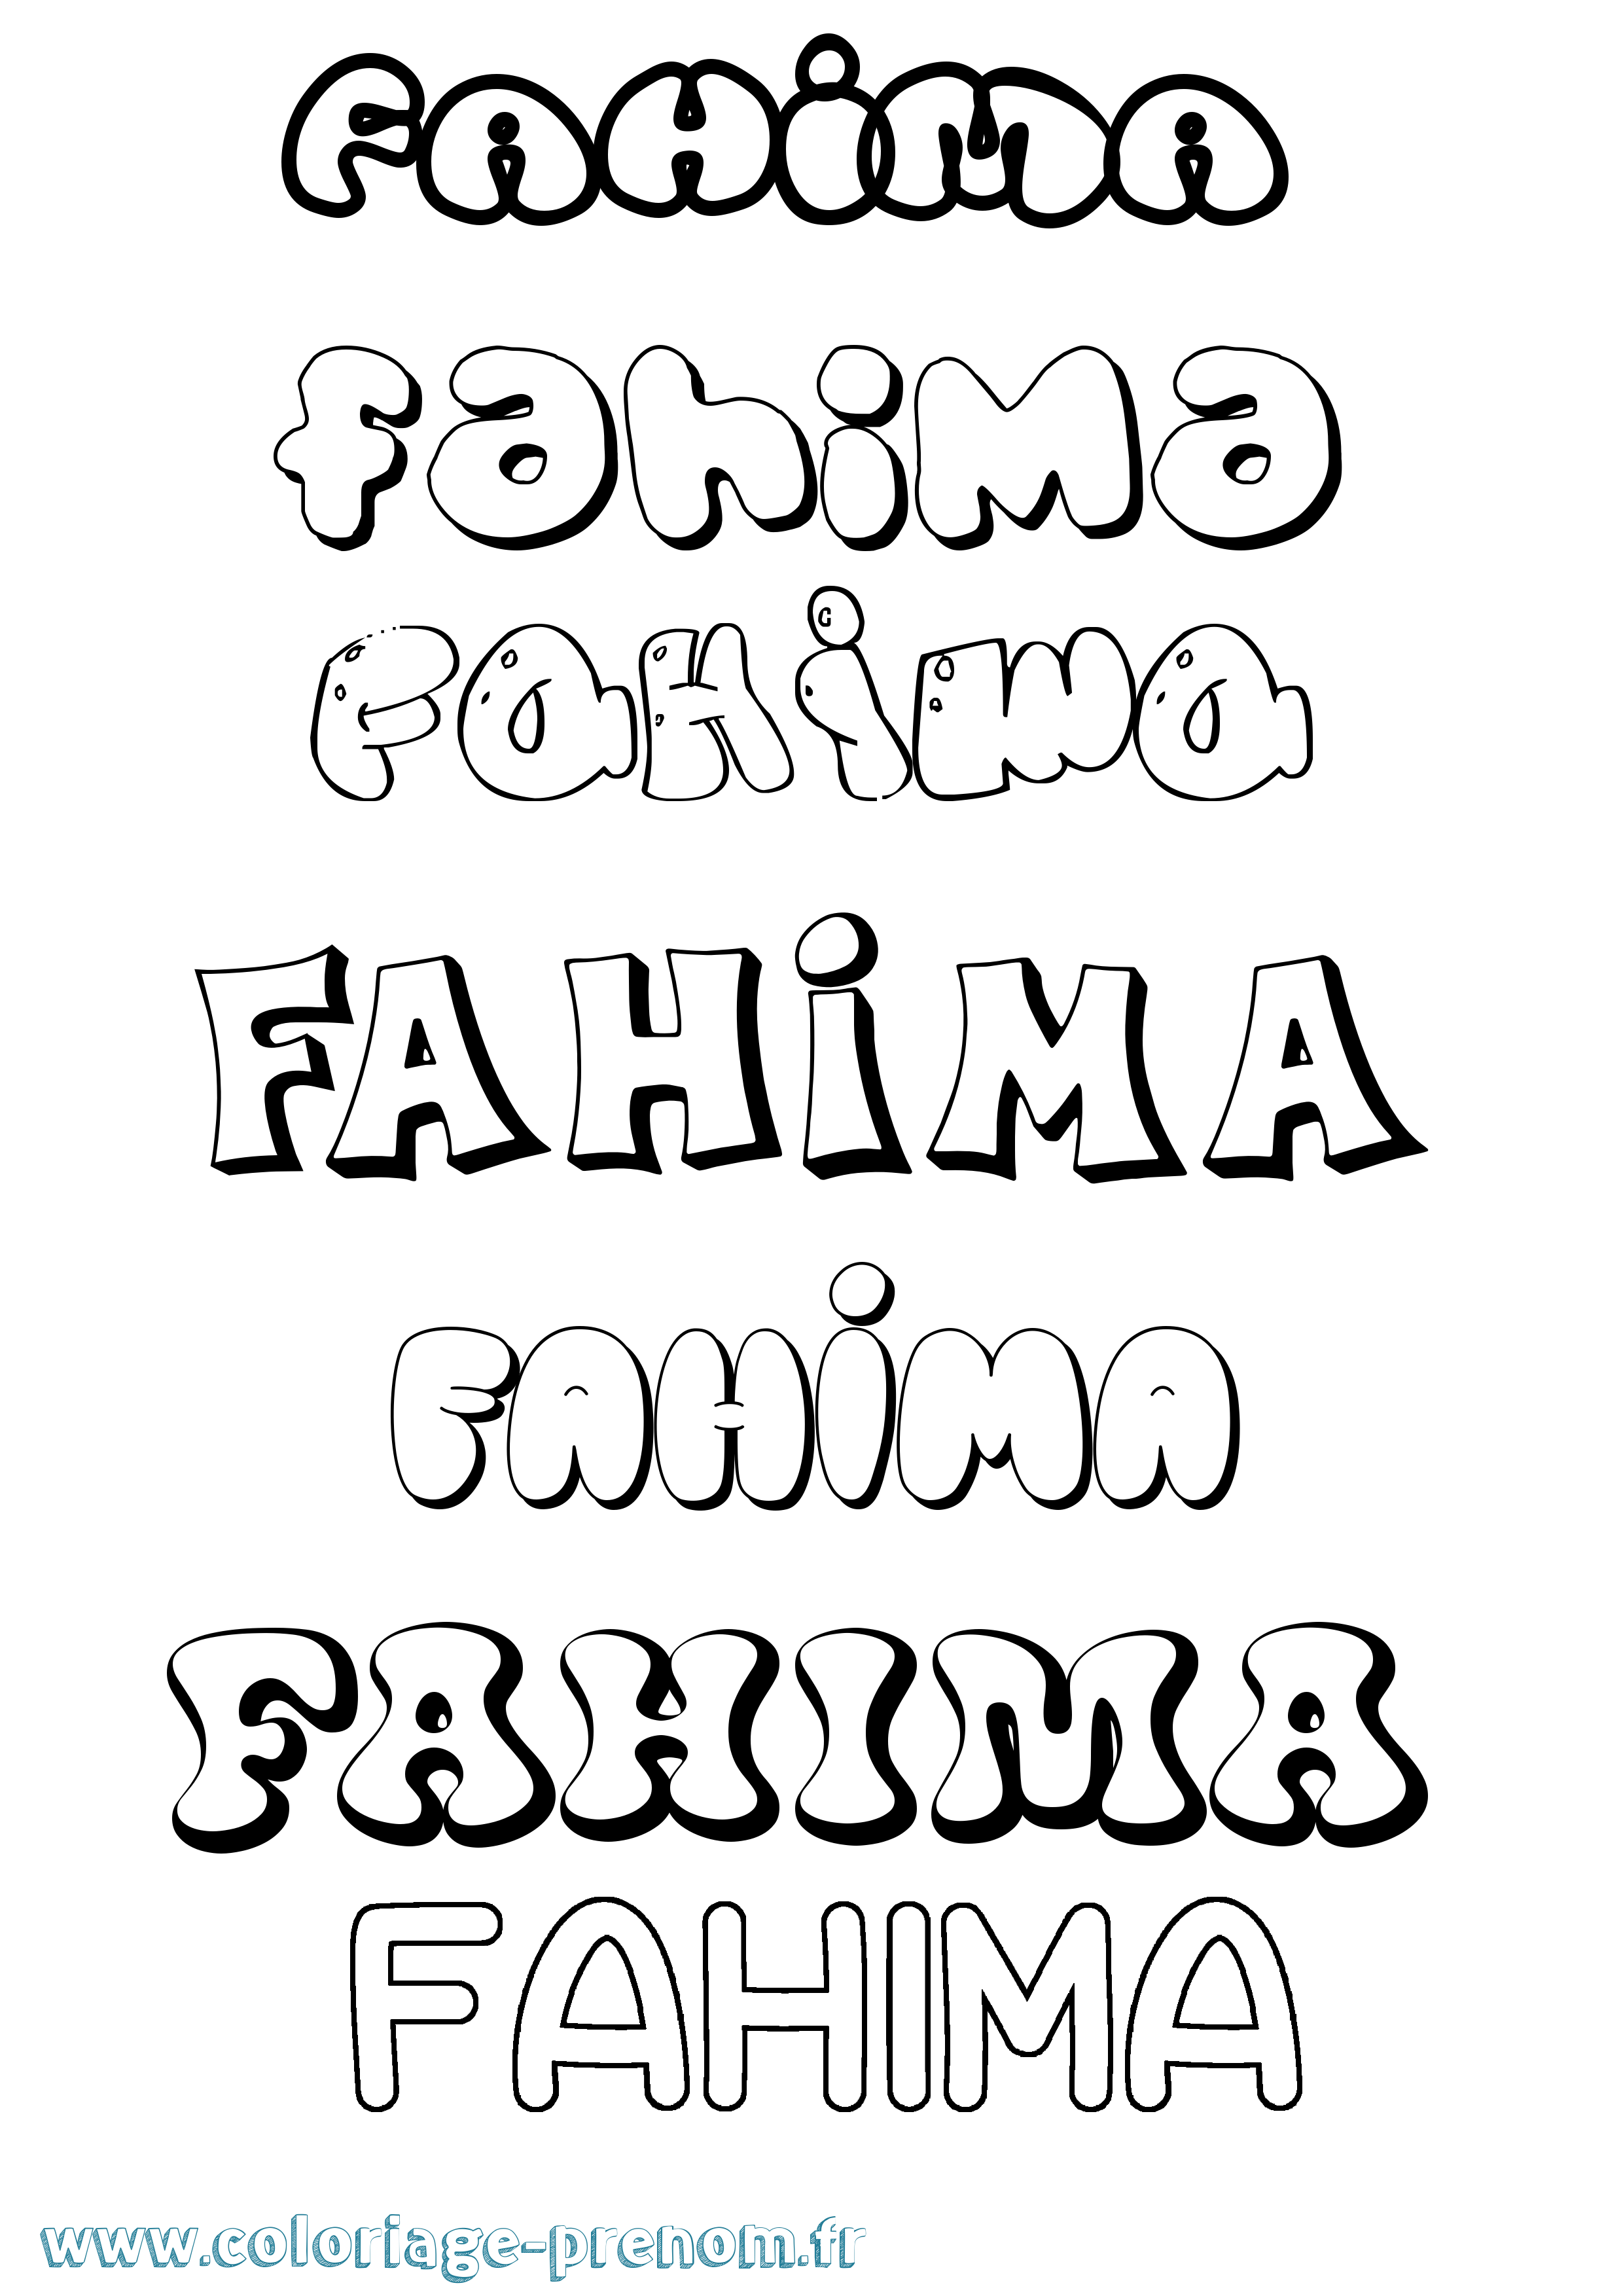 Coloriage prénom Fahima Bubble